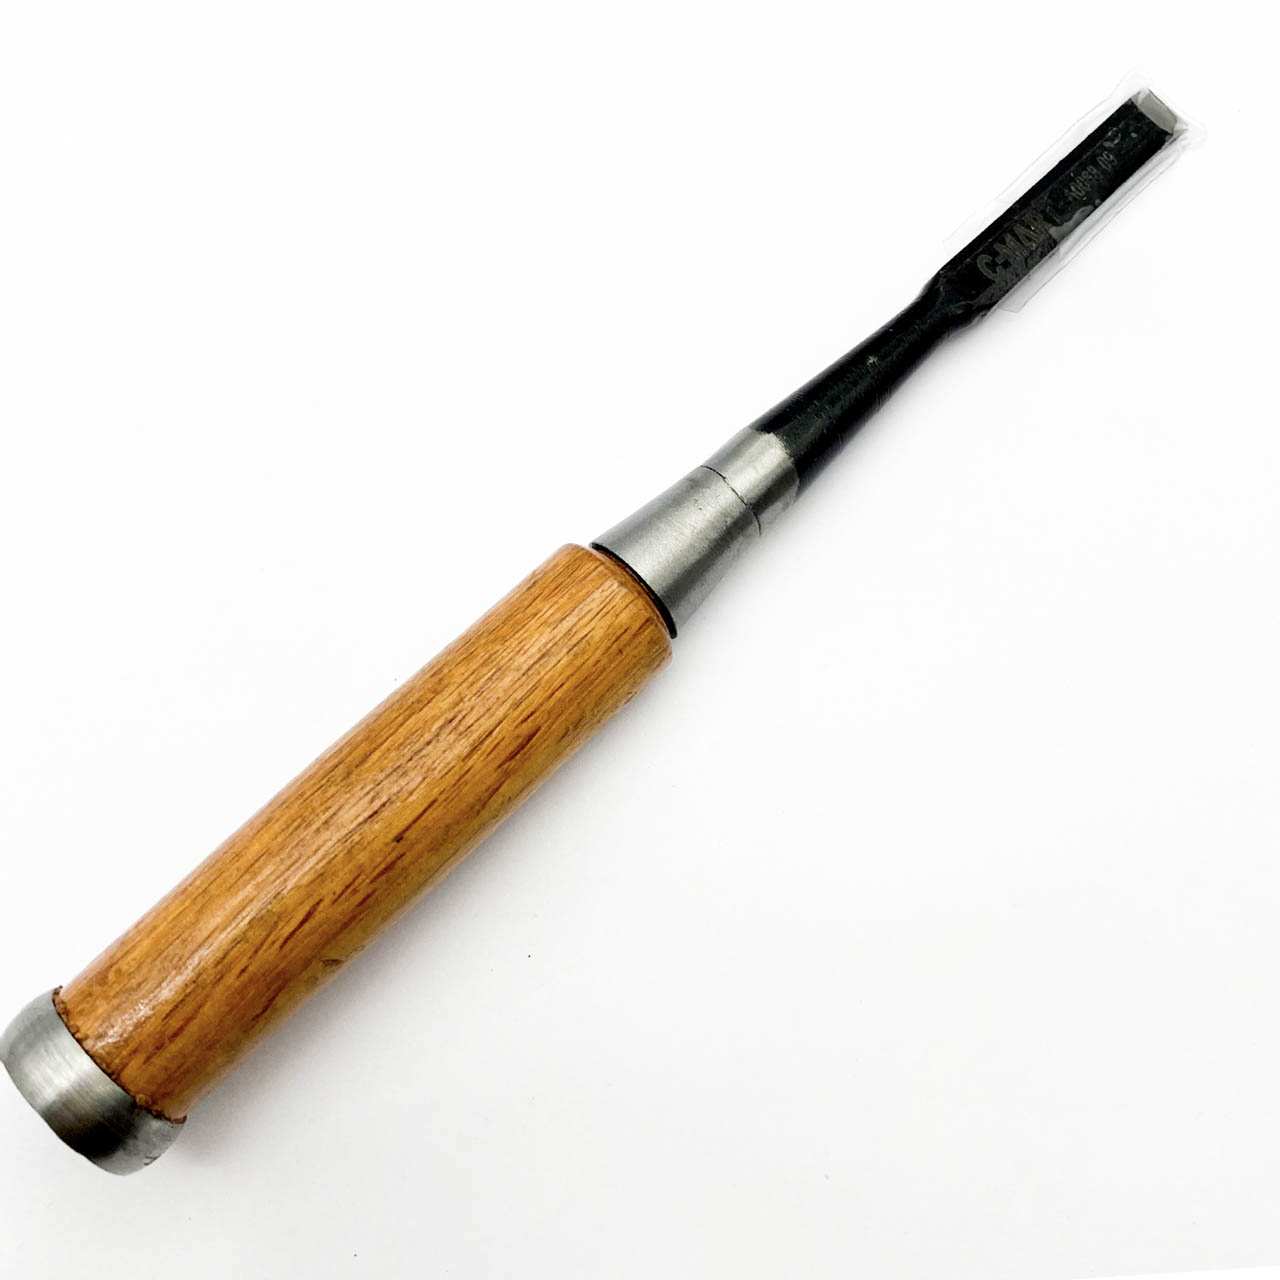 Đục cán gỗ A0088-09 là công cụ hỗ trợ với những người thợ mộc